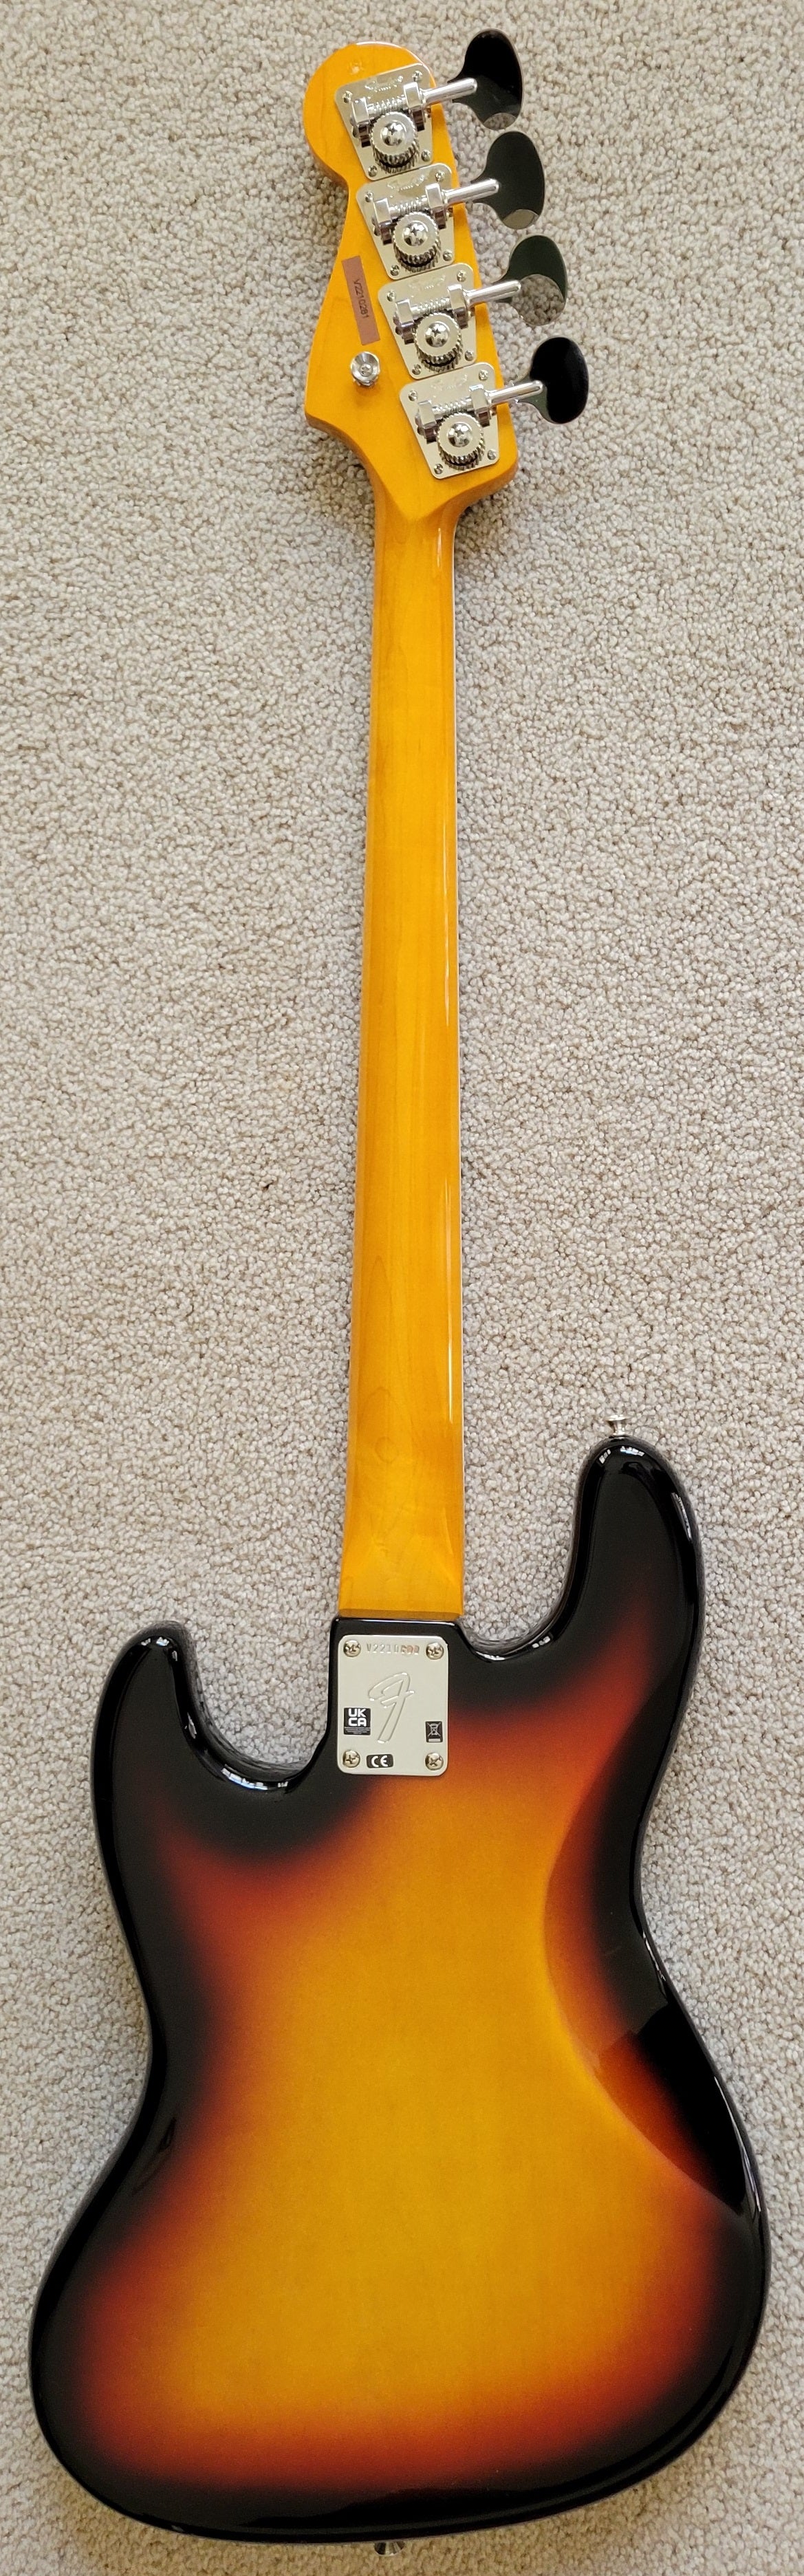 Fender American Vintage II 1966 Jazz Bass Guitar, 3-Color Sunburst,  Vintage-Style HSC